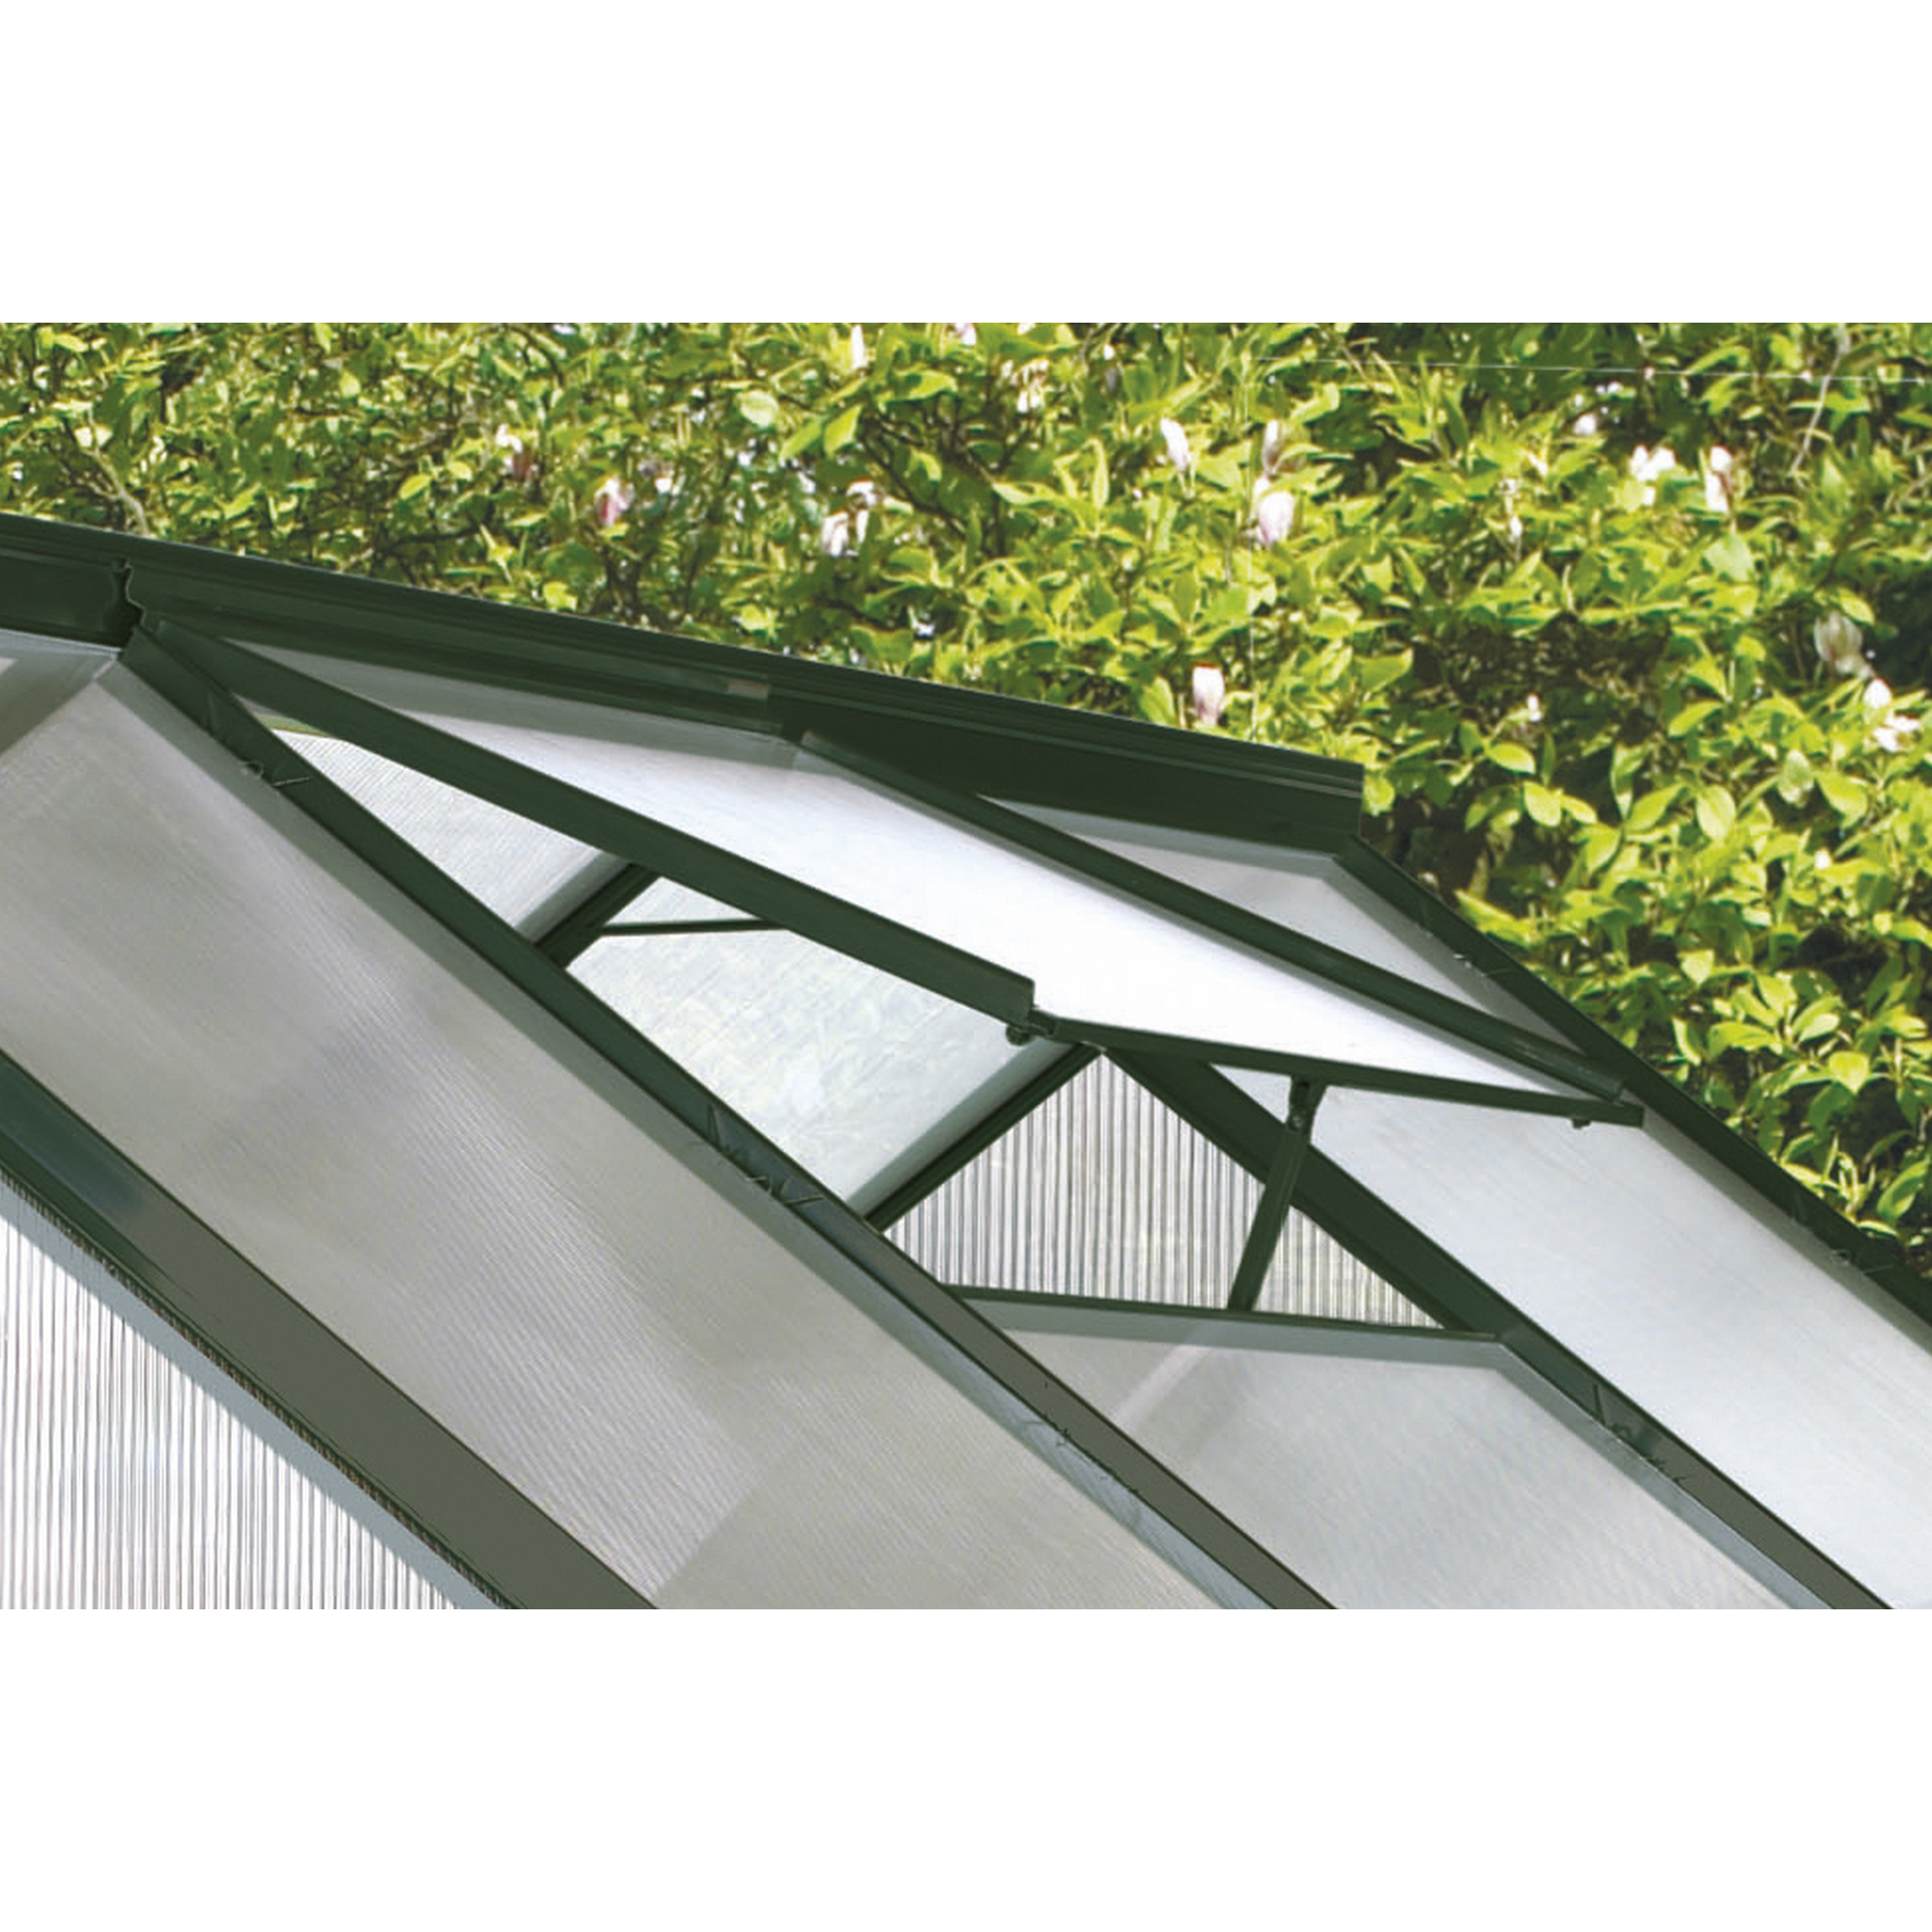 Dachfenster für Gewächshaus 'Calypso' smaragd 57,3 x 73,6 cm + product picture